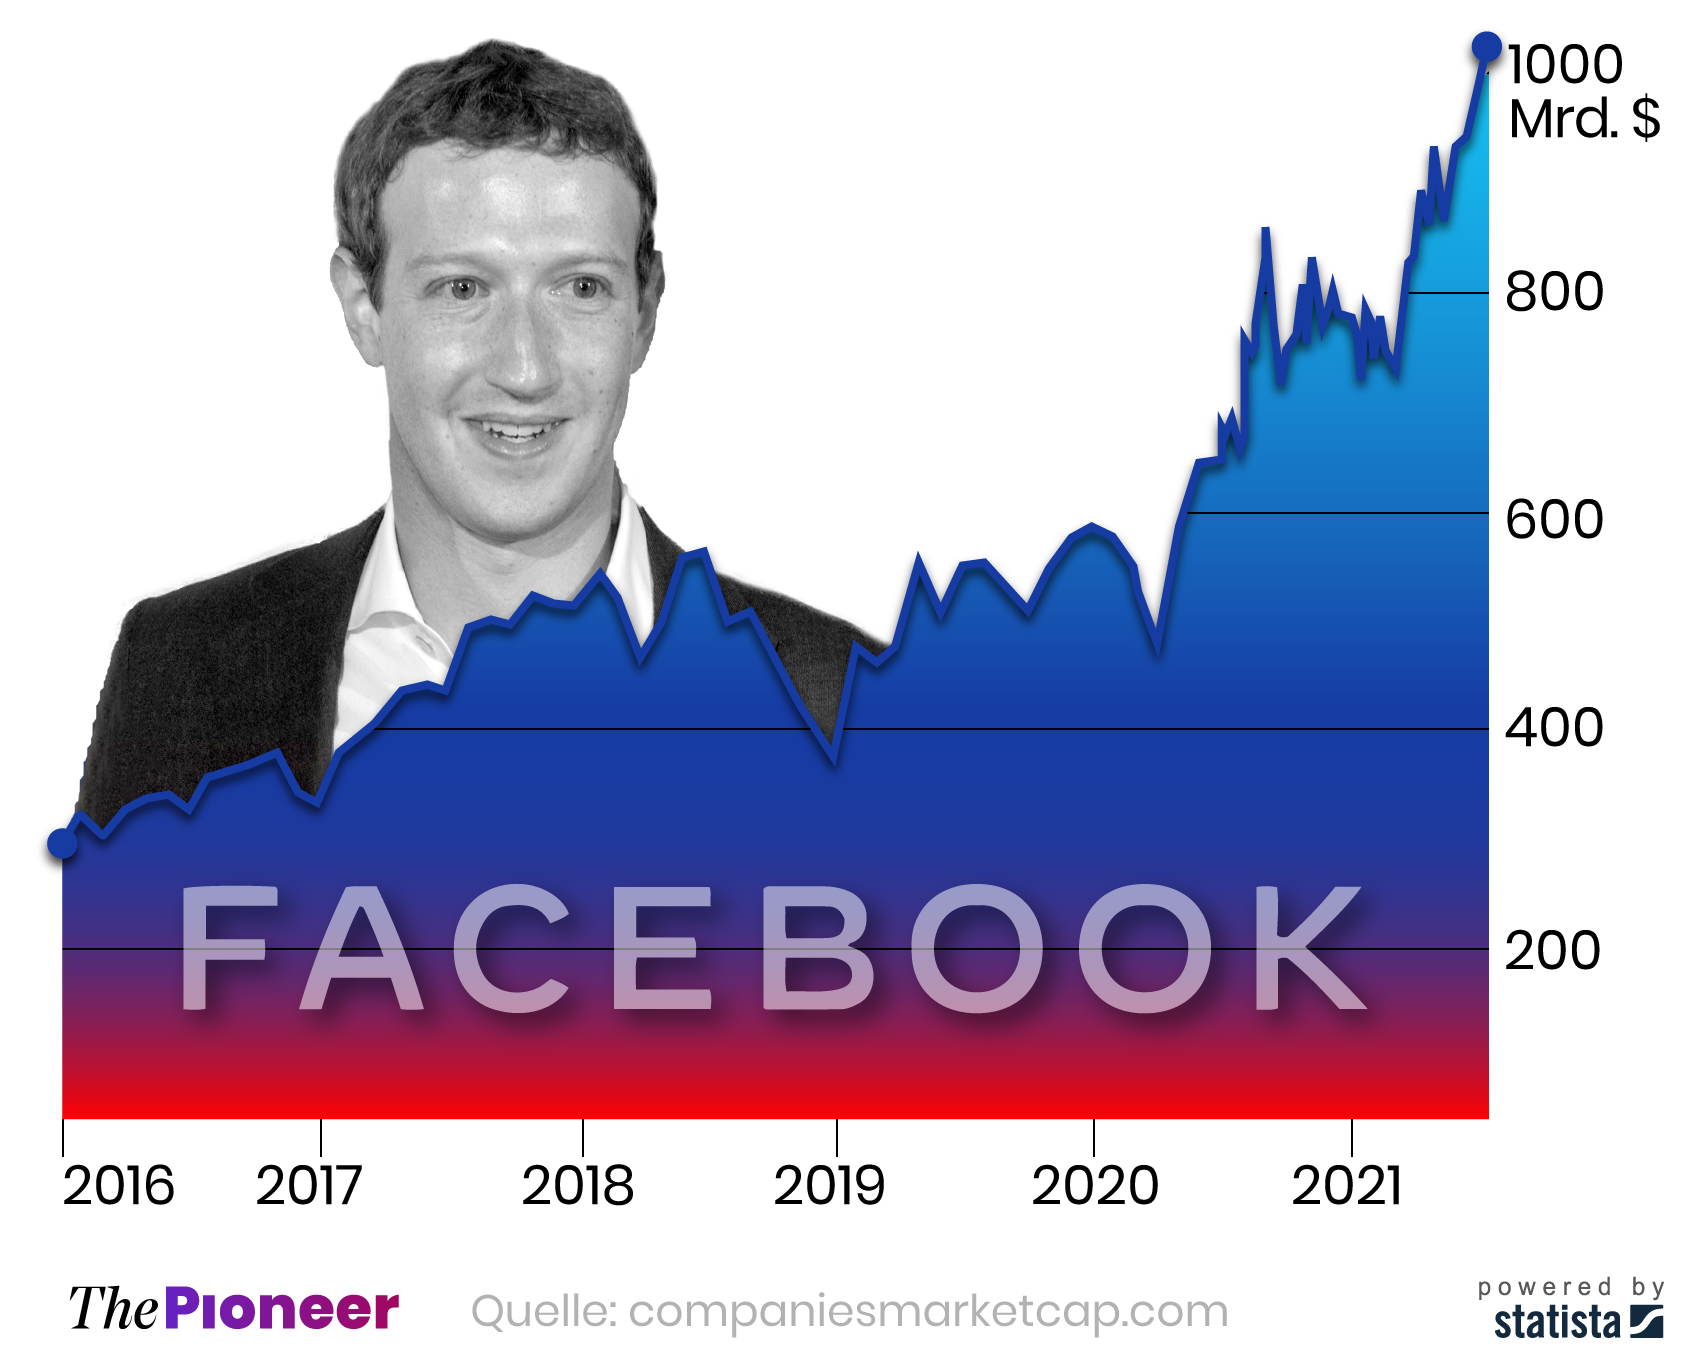 Marktkapitalisierung von Facebook seit 2016, in Milliarden US-Dollar